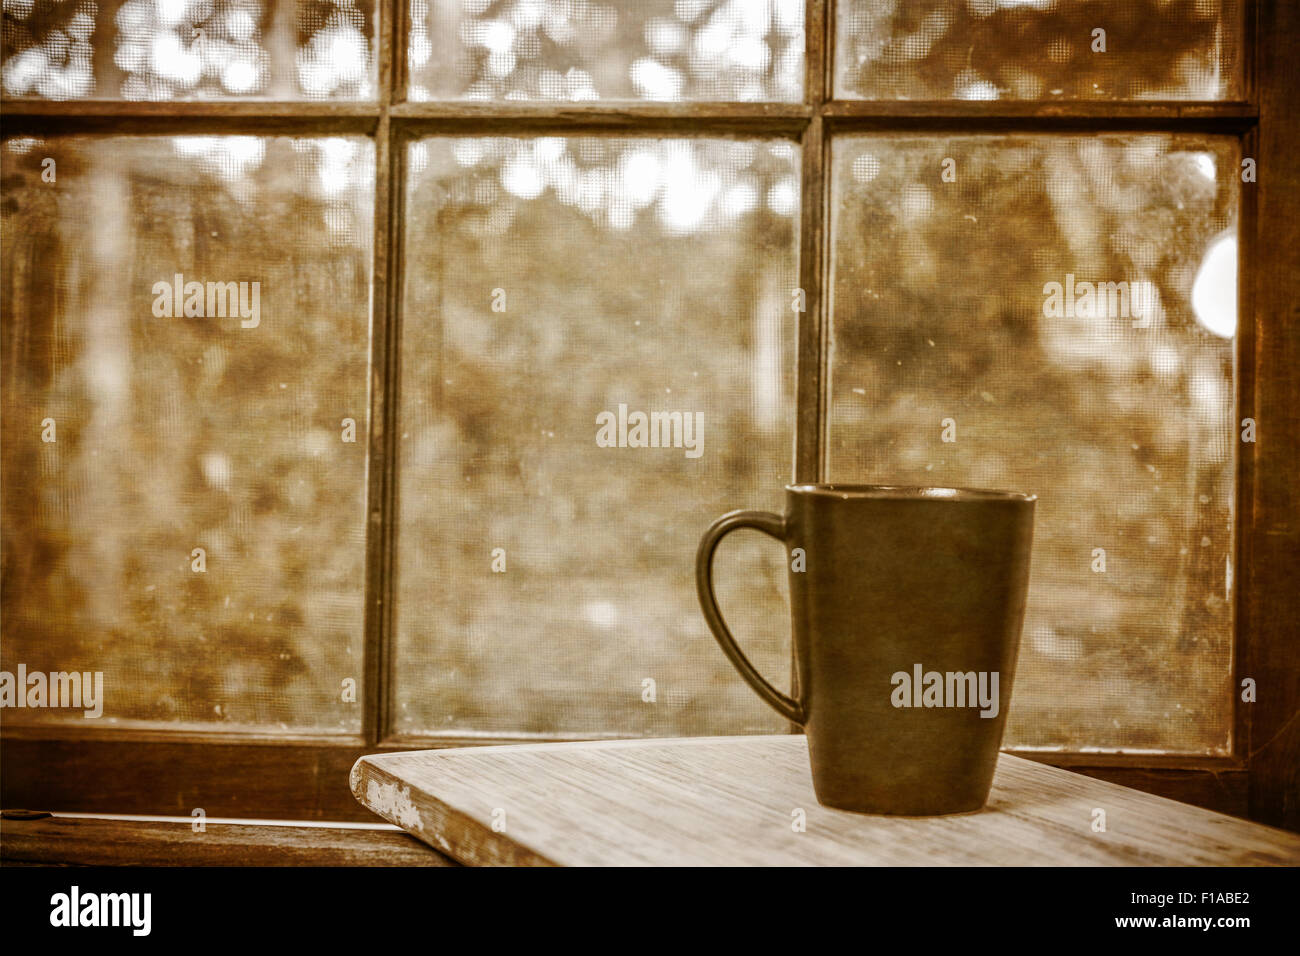 Schwarzer Kaffee-Becher vor verglaste Fenster.  Sepia-Farbton Stockfoto